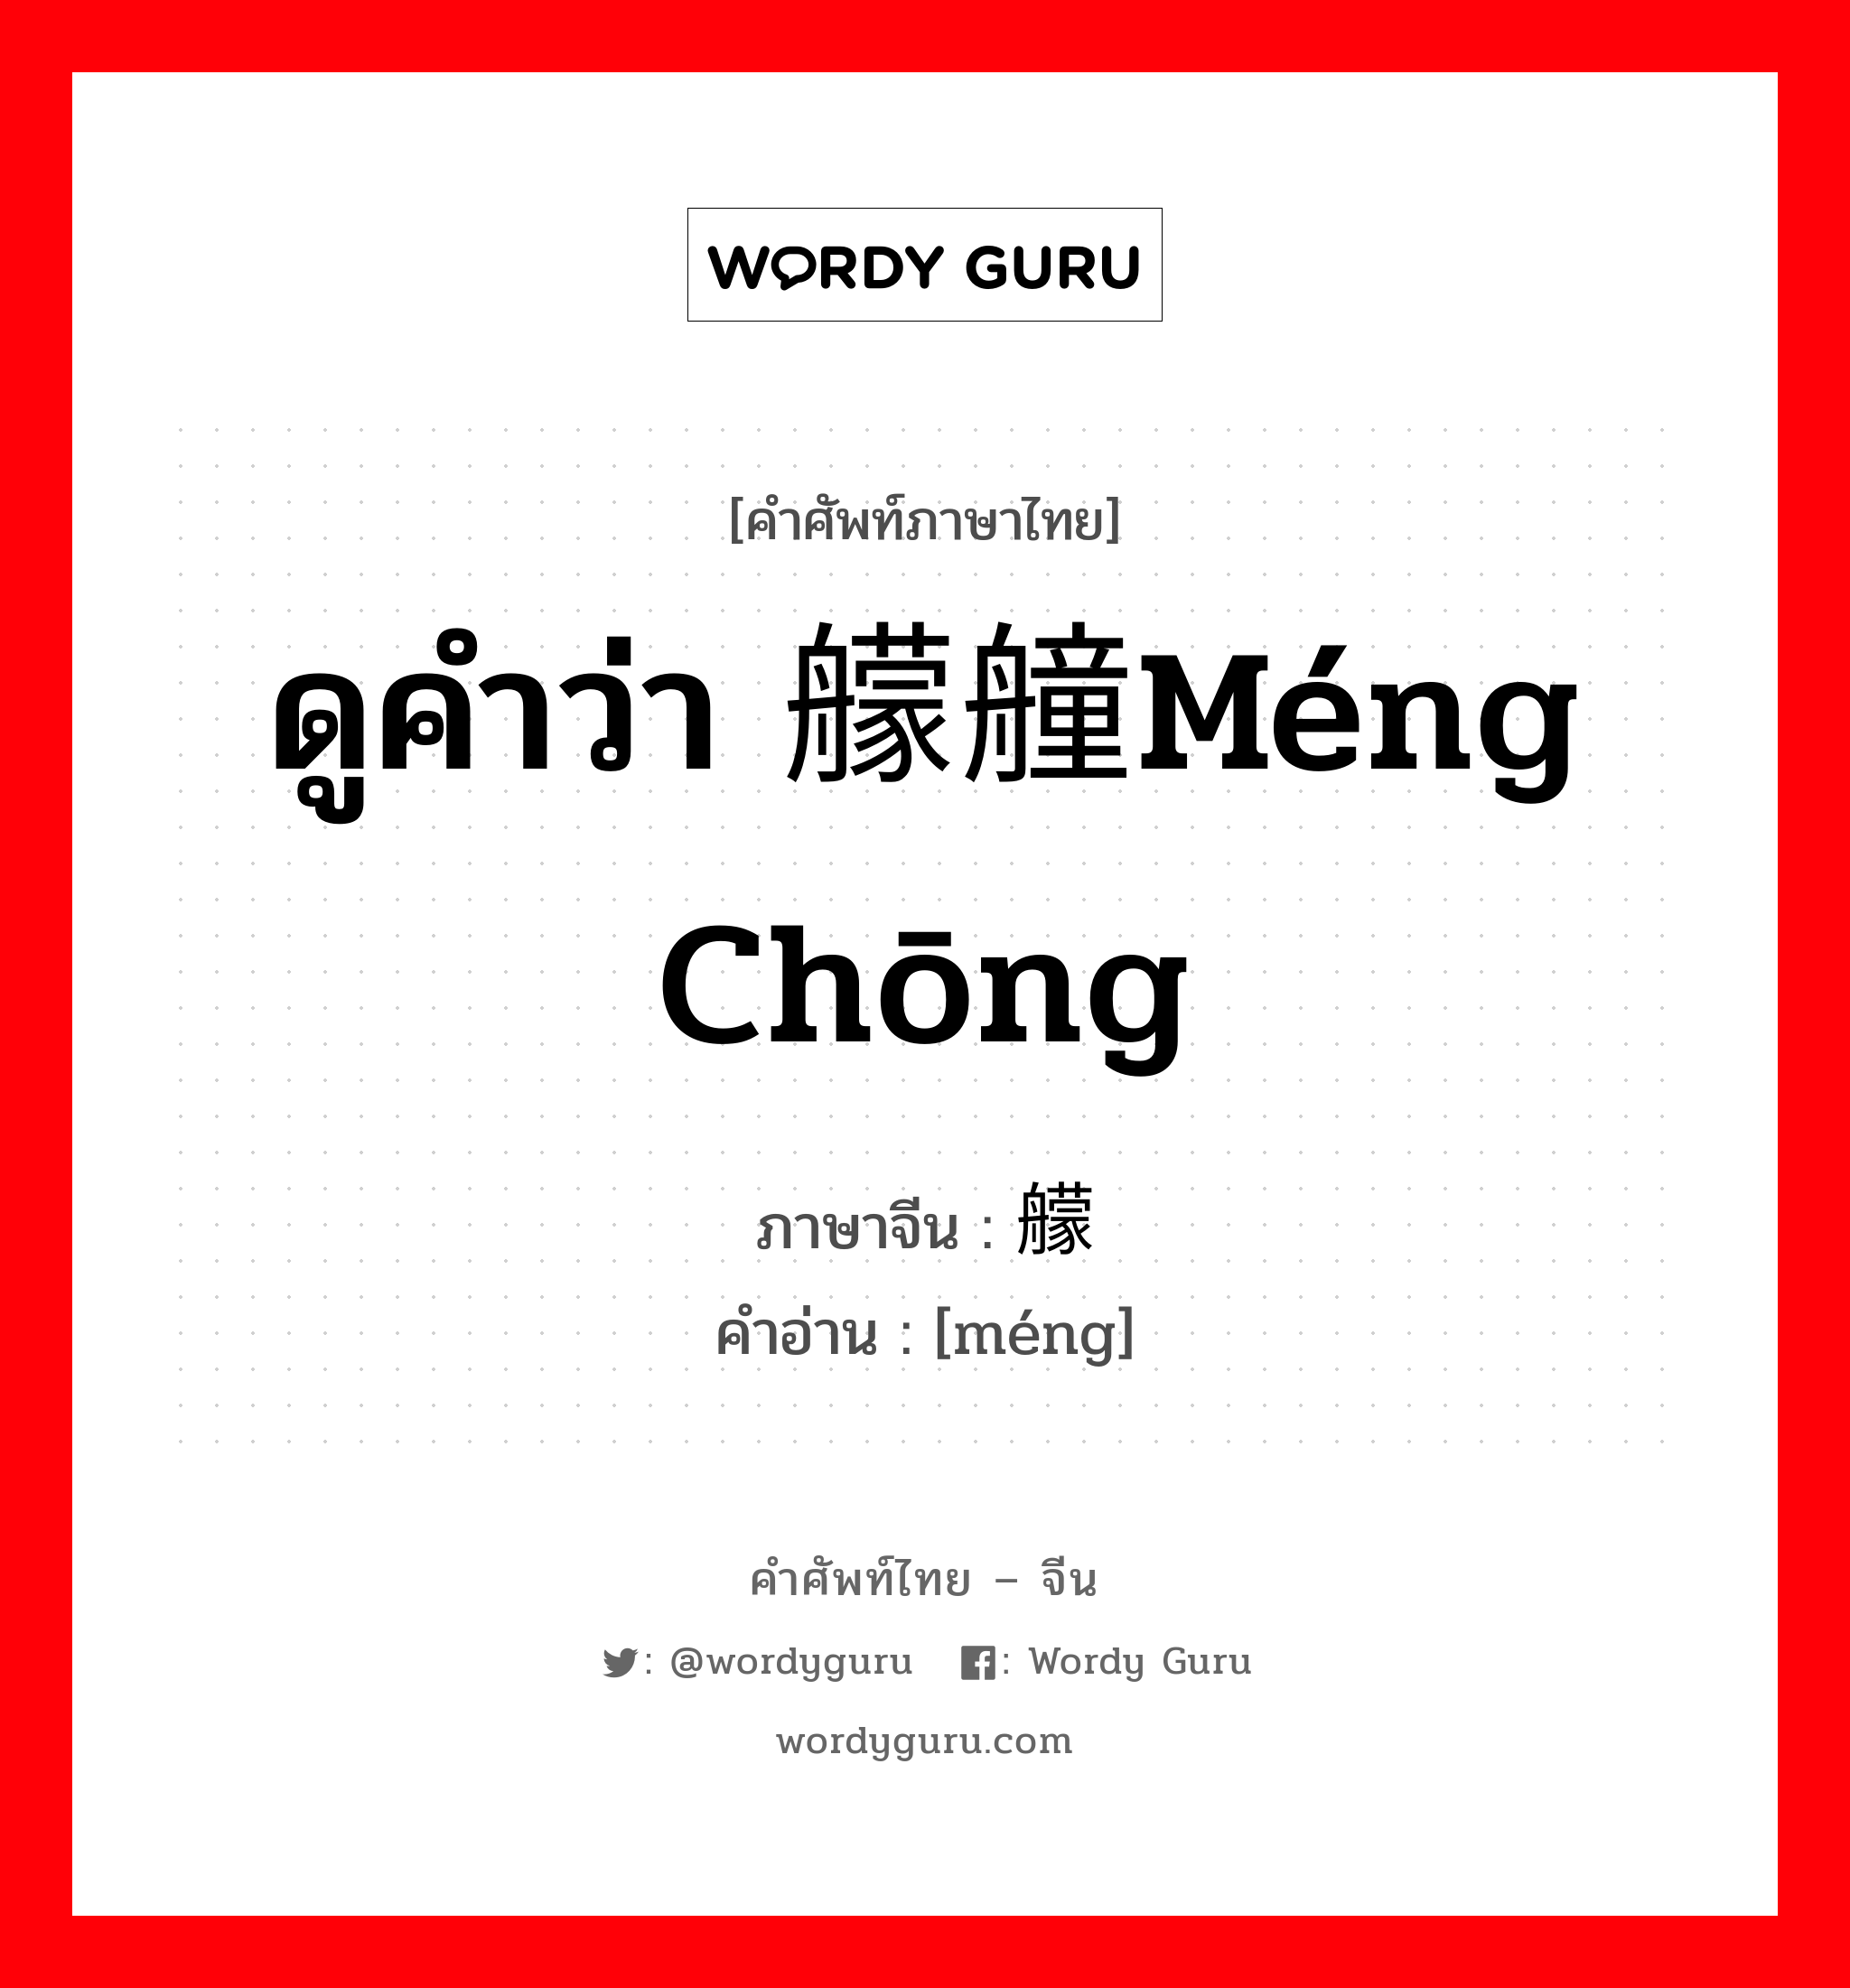 ดูคำว่า 艨艟méng chōng ภาษาจีนคืออะไร, คำศัพท์ภาษาไทย - จีน ดูคำว่า 艨艟méng chōng ภาษาจีน 艨 คำอ่าน [méng]